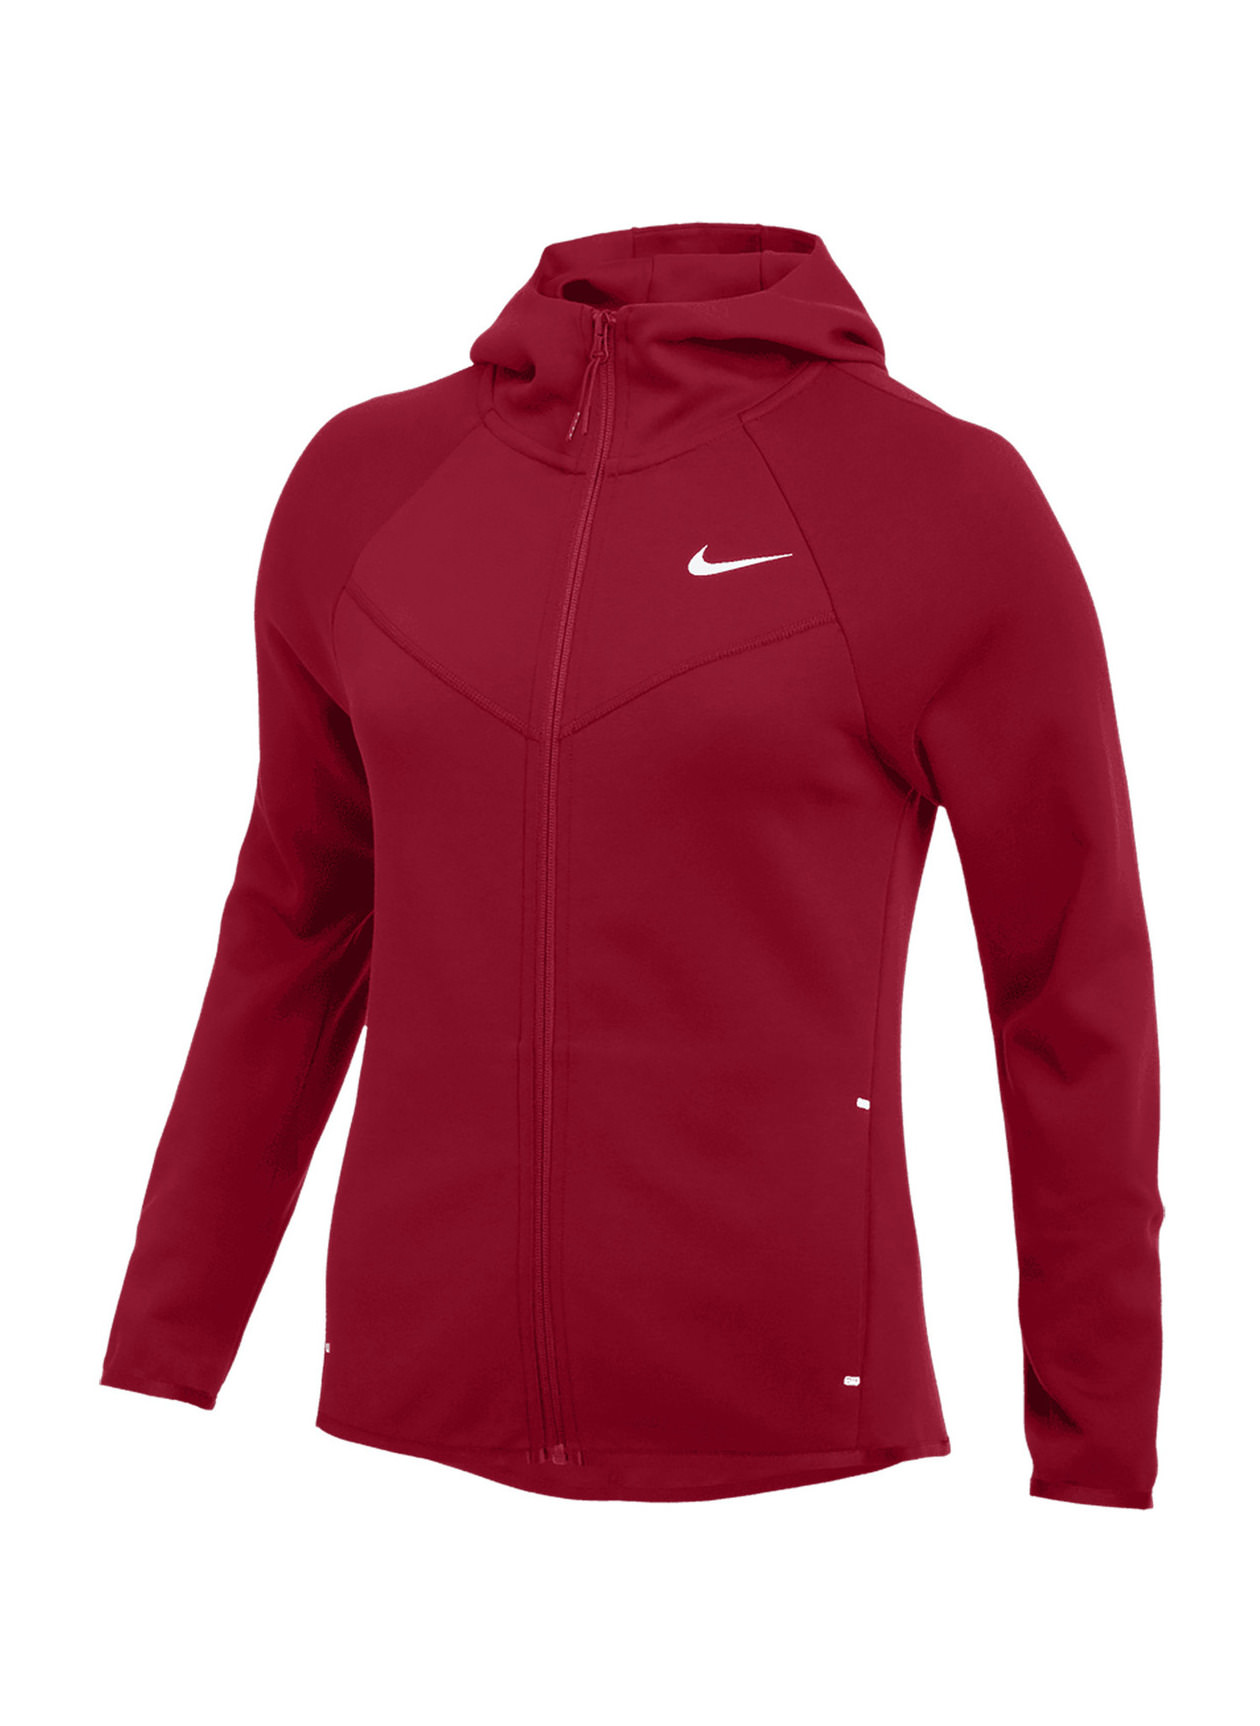 Nike Windrunner Tech Fleece Hoodie Women's Team Crimson / White